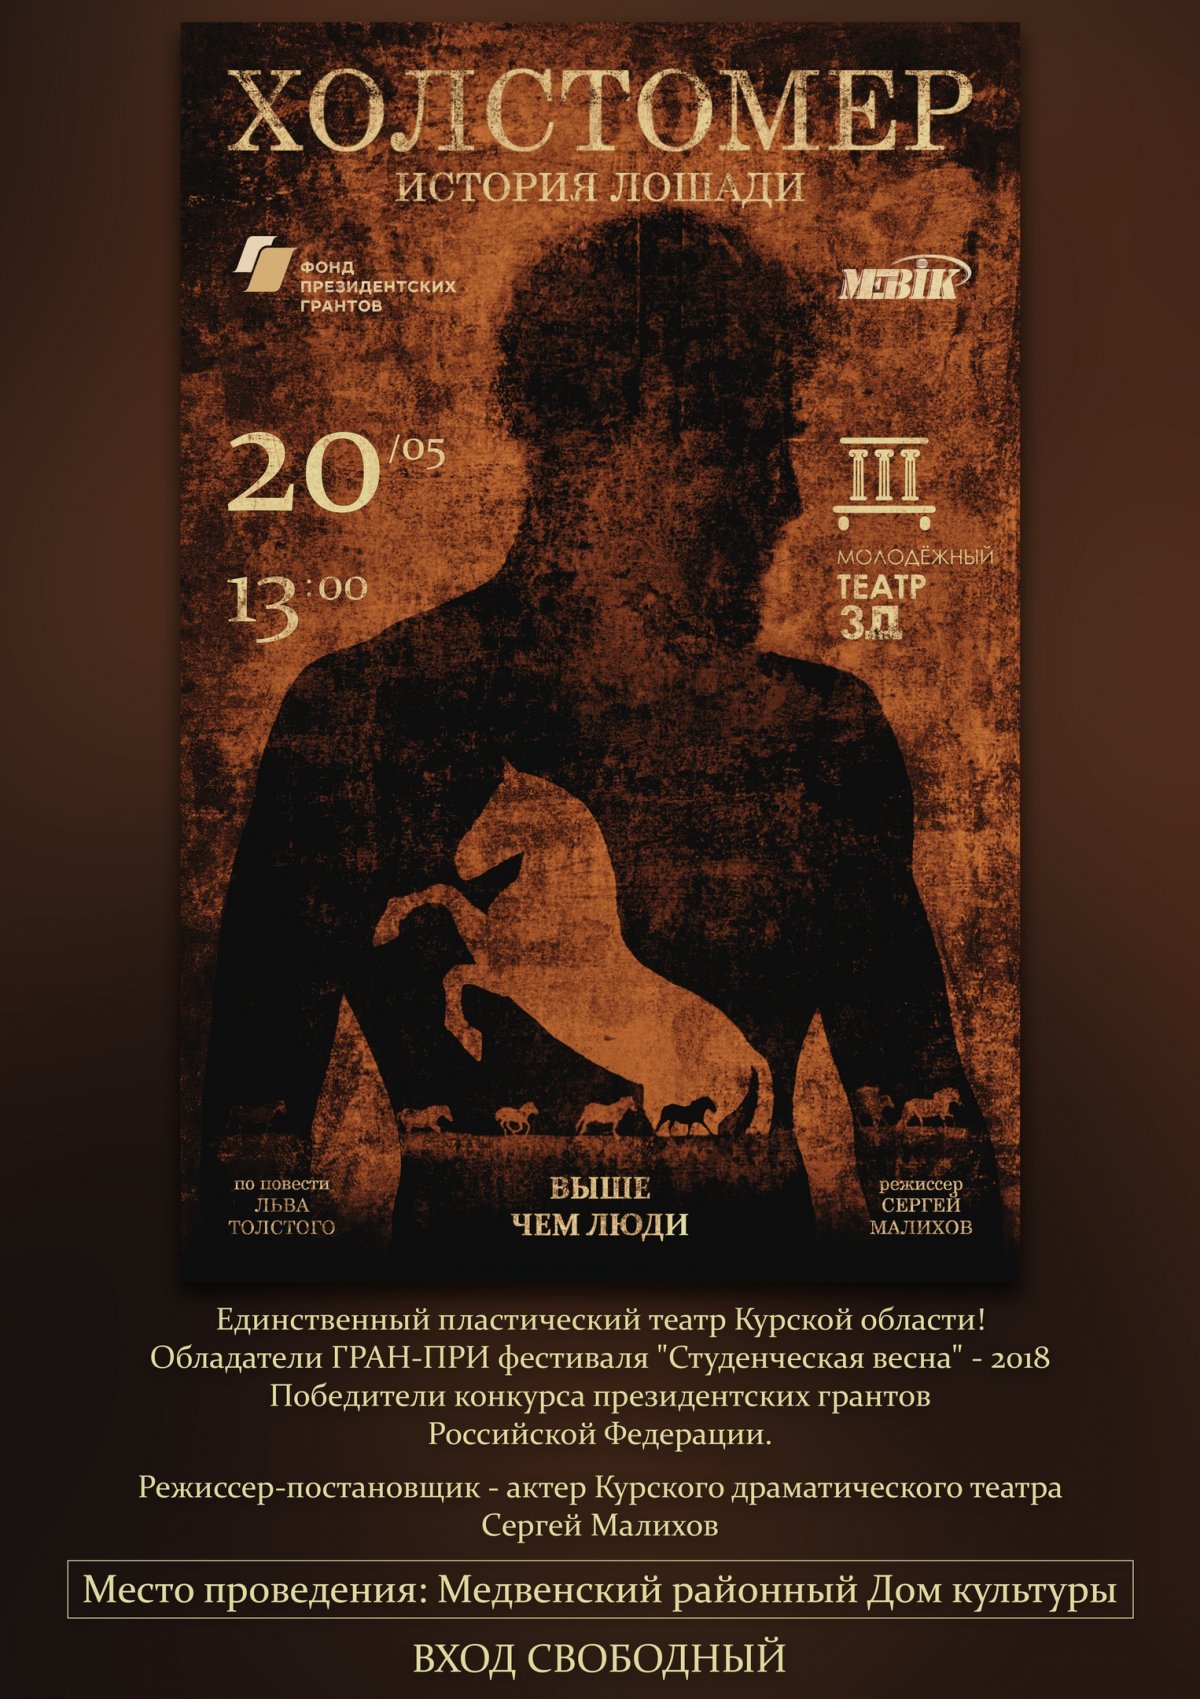 ‼‼‼20 мая в 13.00 Молодежный театр "3Д" МЭБИК посетит Медвенку!!!!!📢📢📢 Приглашаем